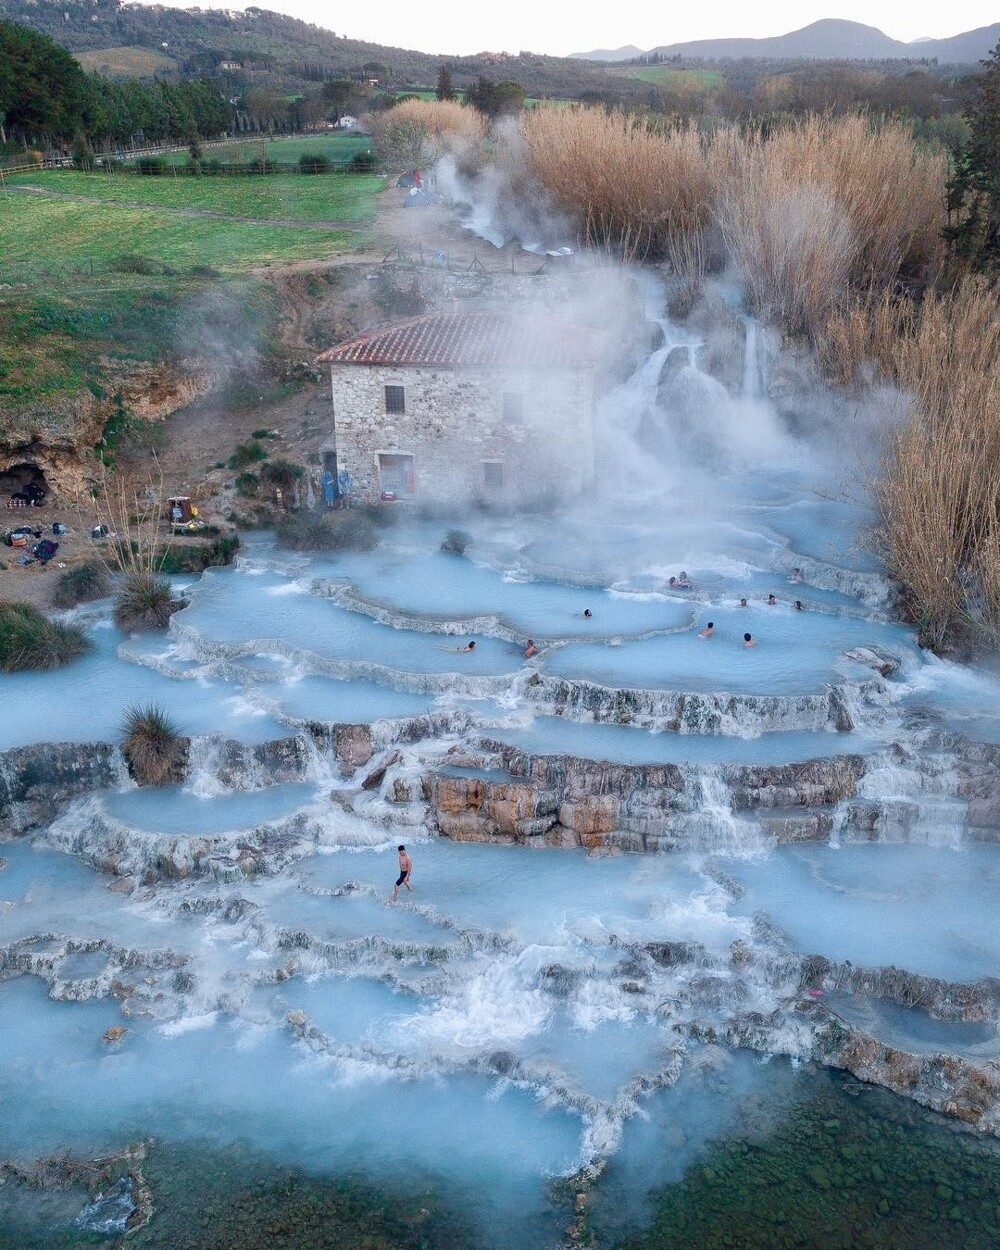 10. “Ванны Сатурнии” в итальянской Тоскане - это источник горячих источников, которые текут с постоянной температурой 37,5 градусов